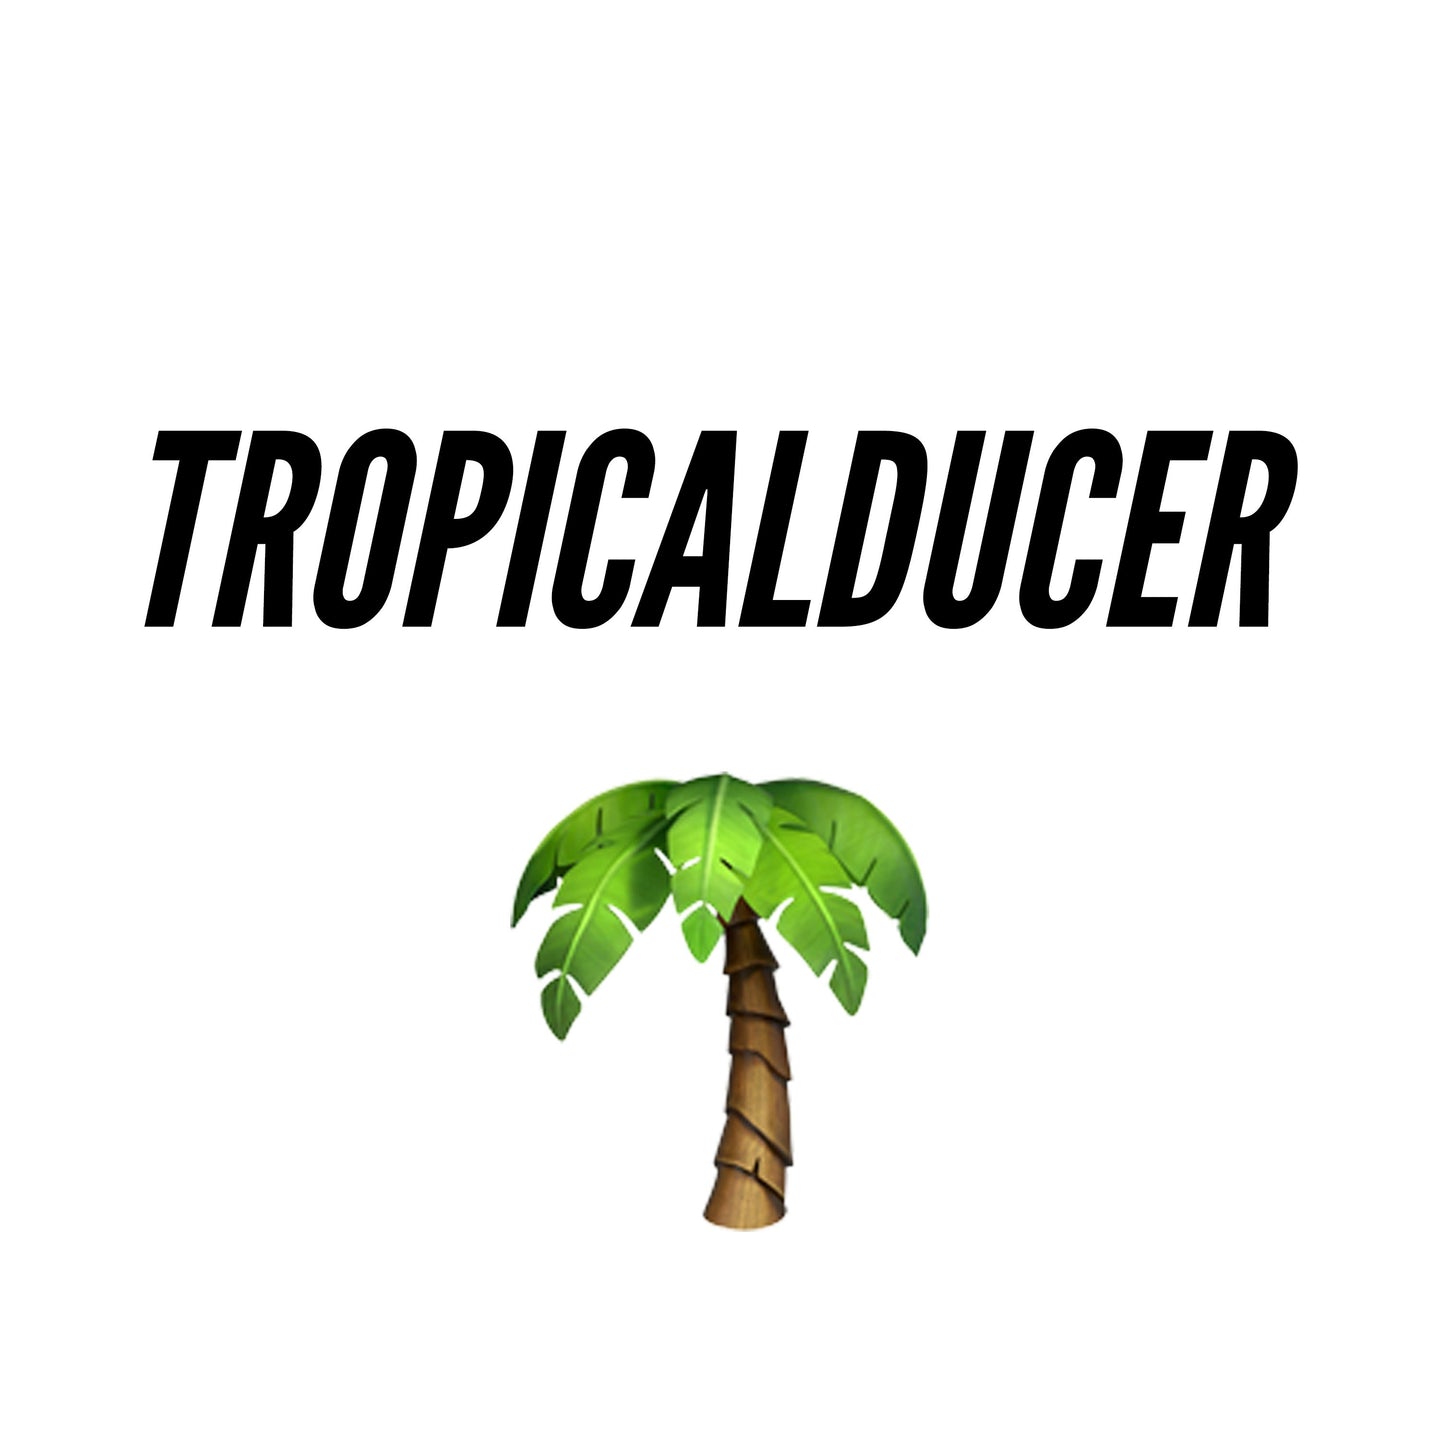 TROPICALDUCER FLP Pack - BRODUCER by EDWAN - Best EDM FLPs, sample packs & Broducer merch